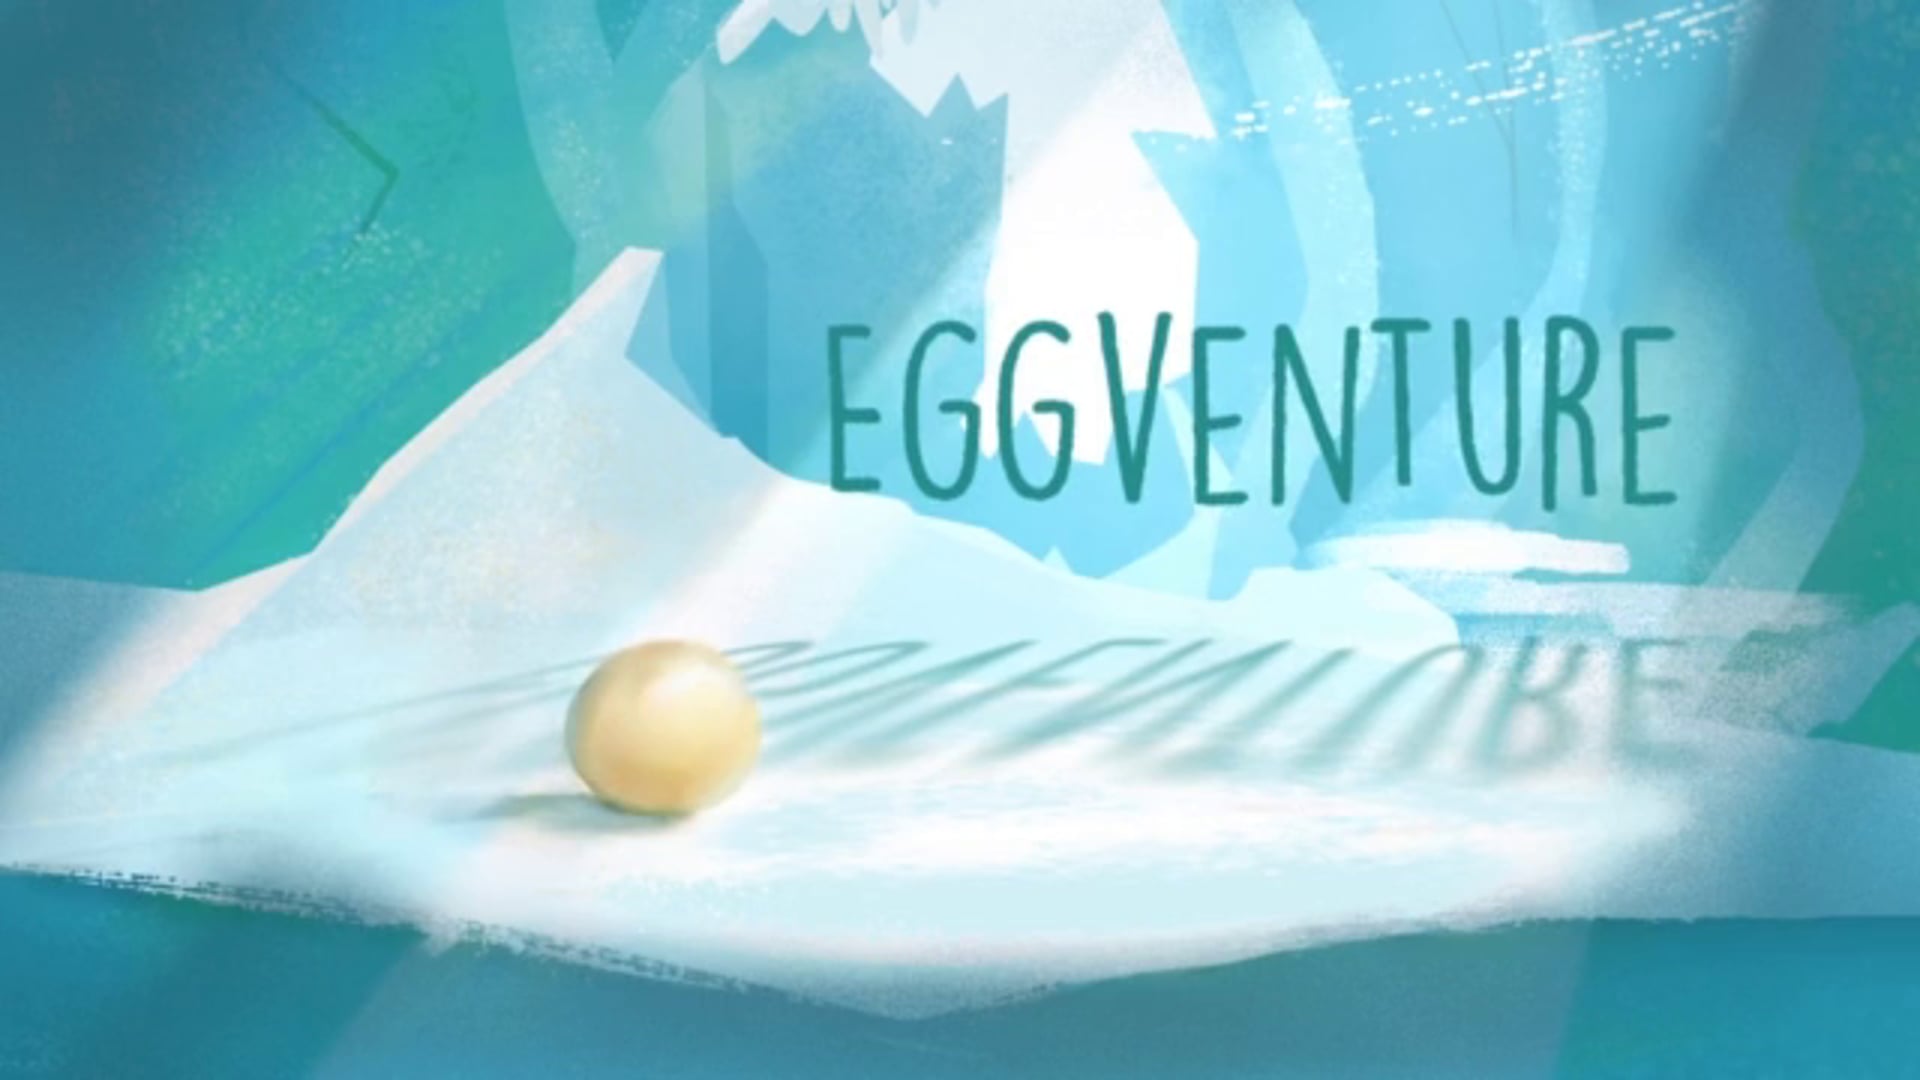 Eggventure